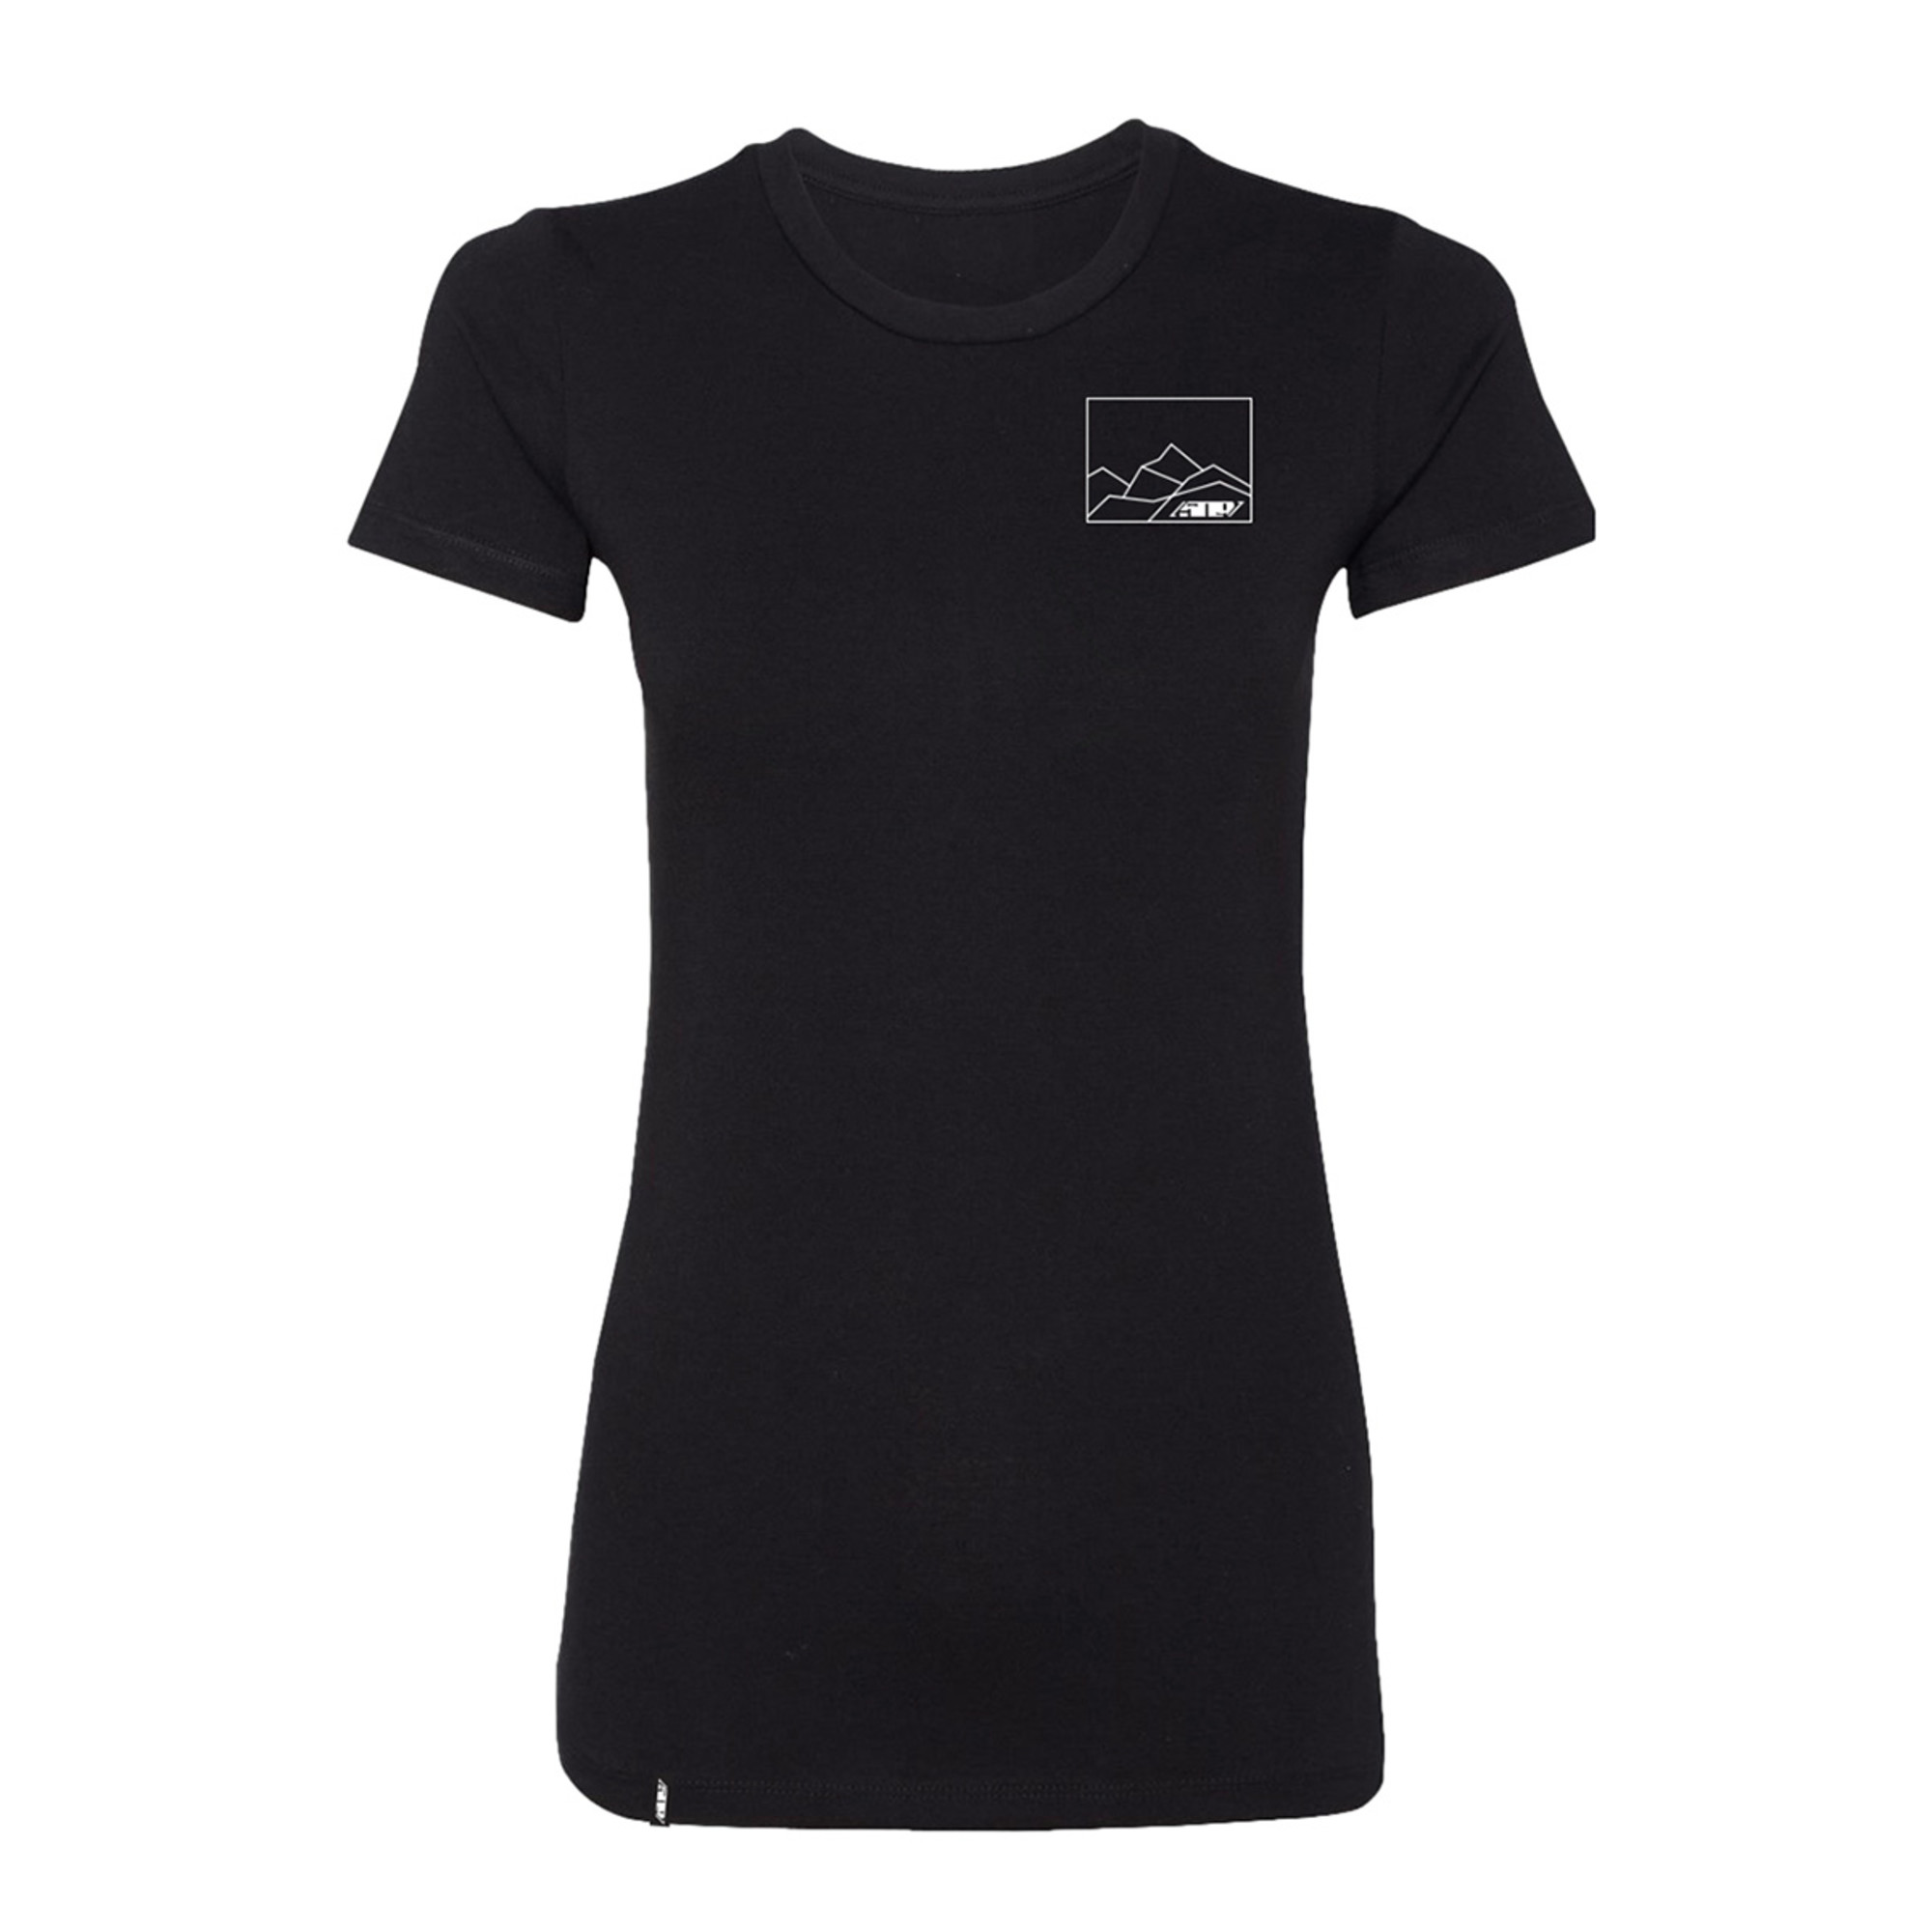 509 t-shirt shirts for womens shadowplay